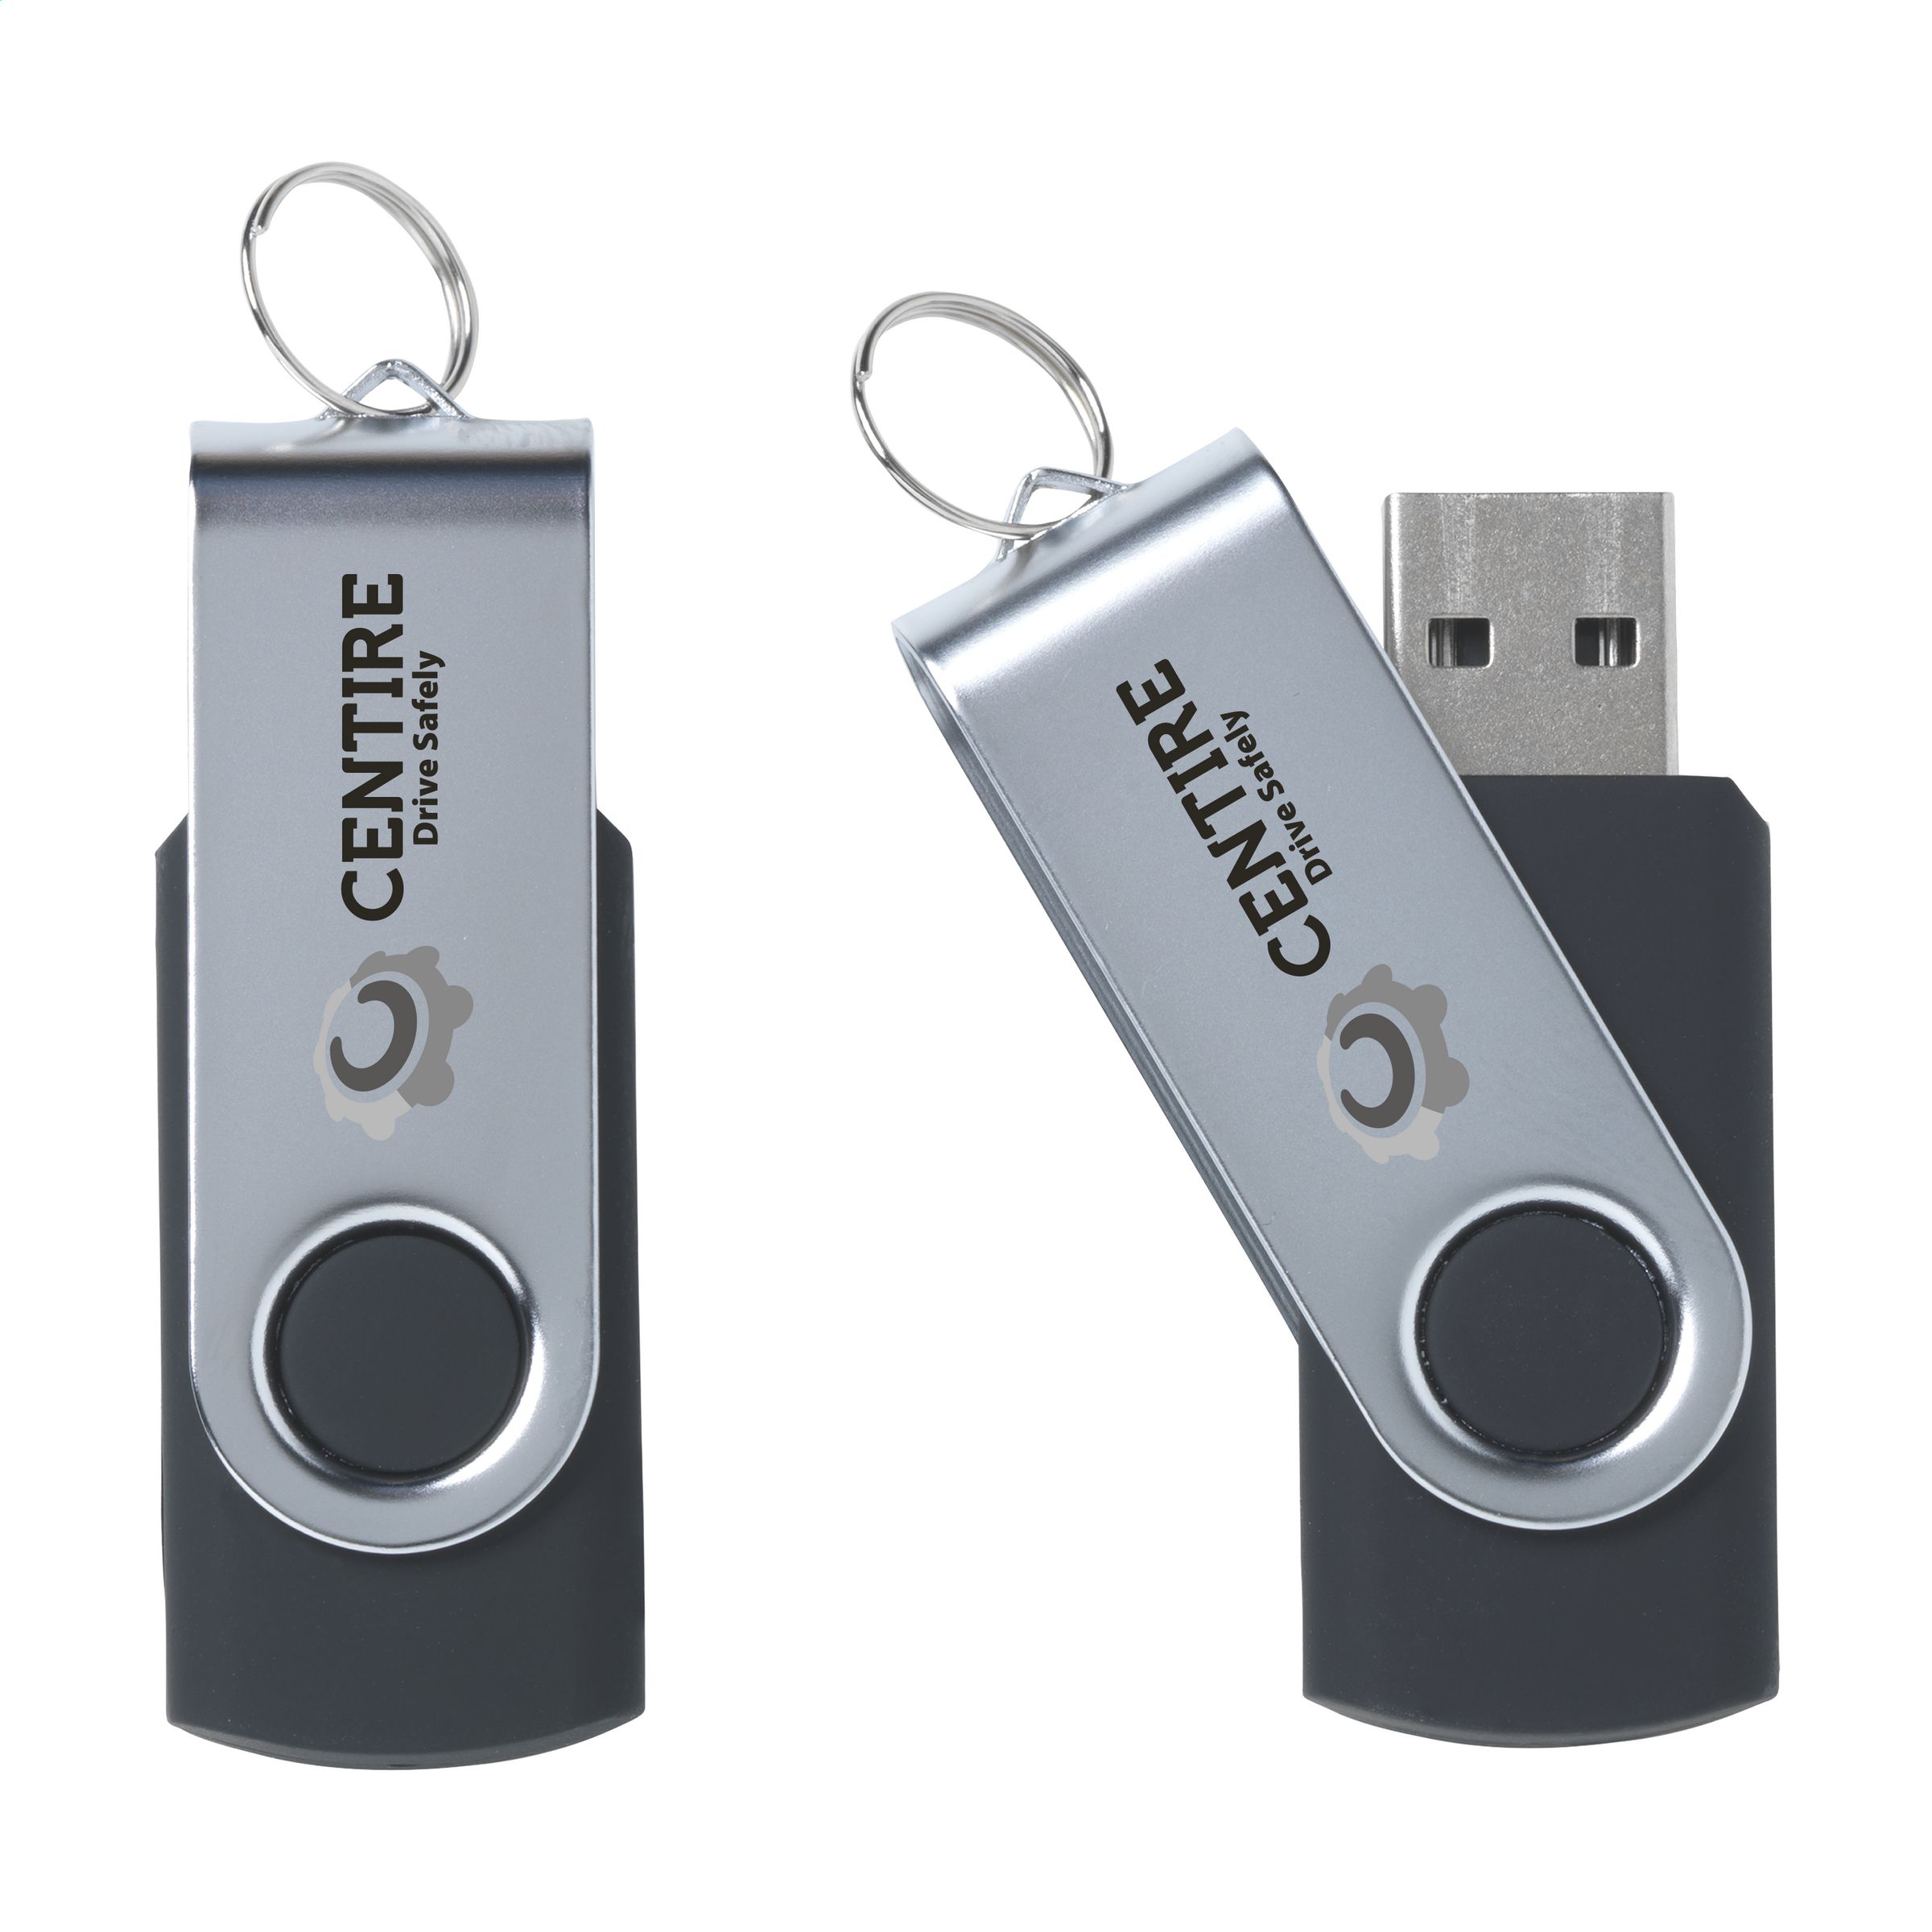 QuickStore USB - Bad Gastein